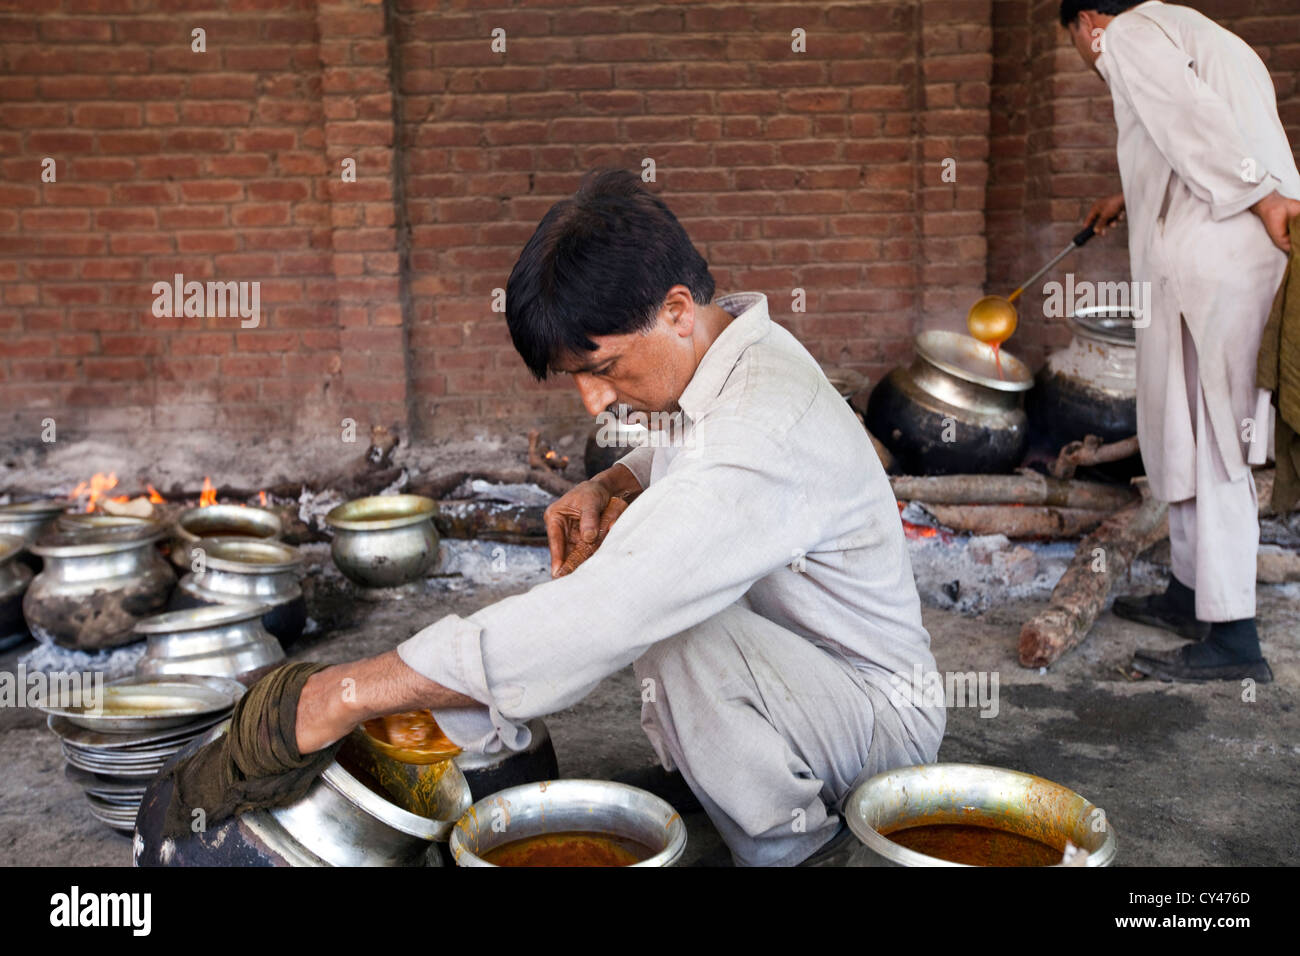 Un waza ou cuisiner dans la tradition du Cachemire et cuisiniers prépare la nourriture pour une fête traditionnelle Wazwan. Srinagar, au Cachemire, en Inde Banque D'Images